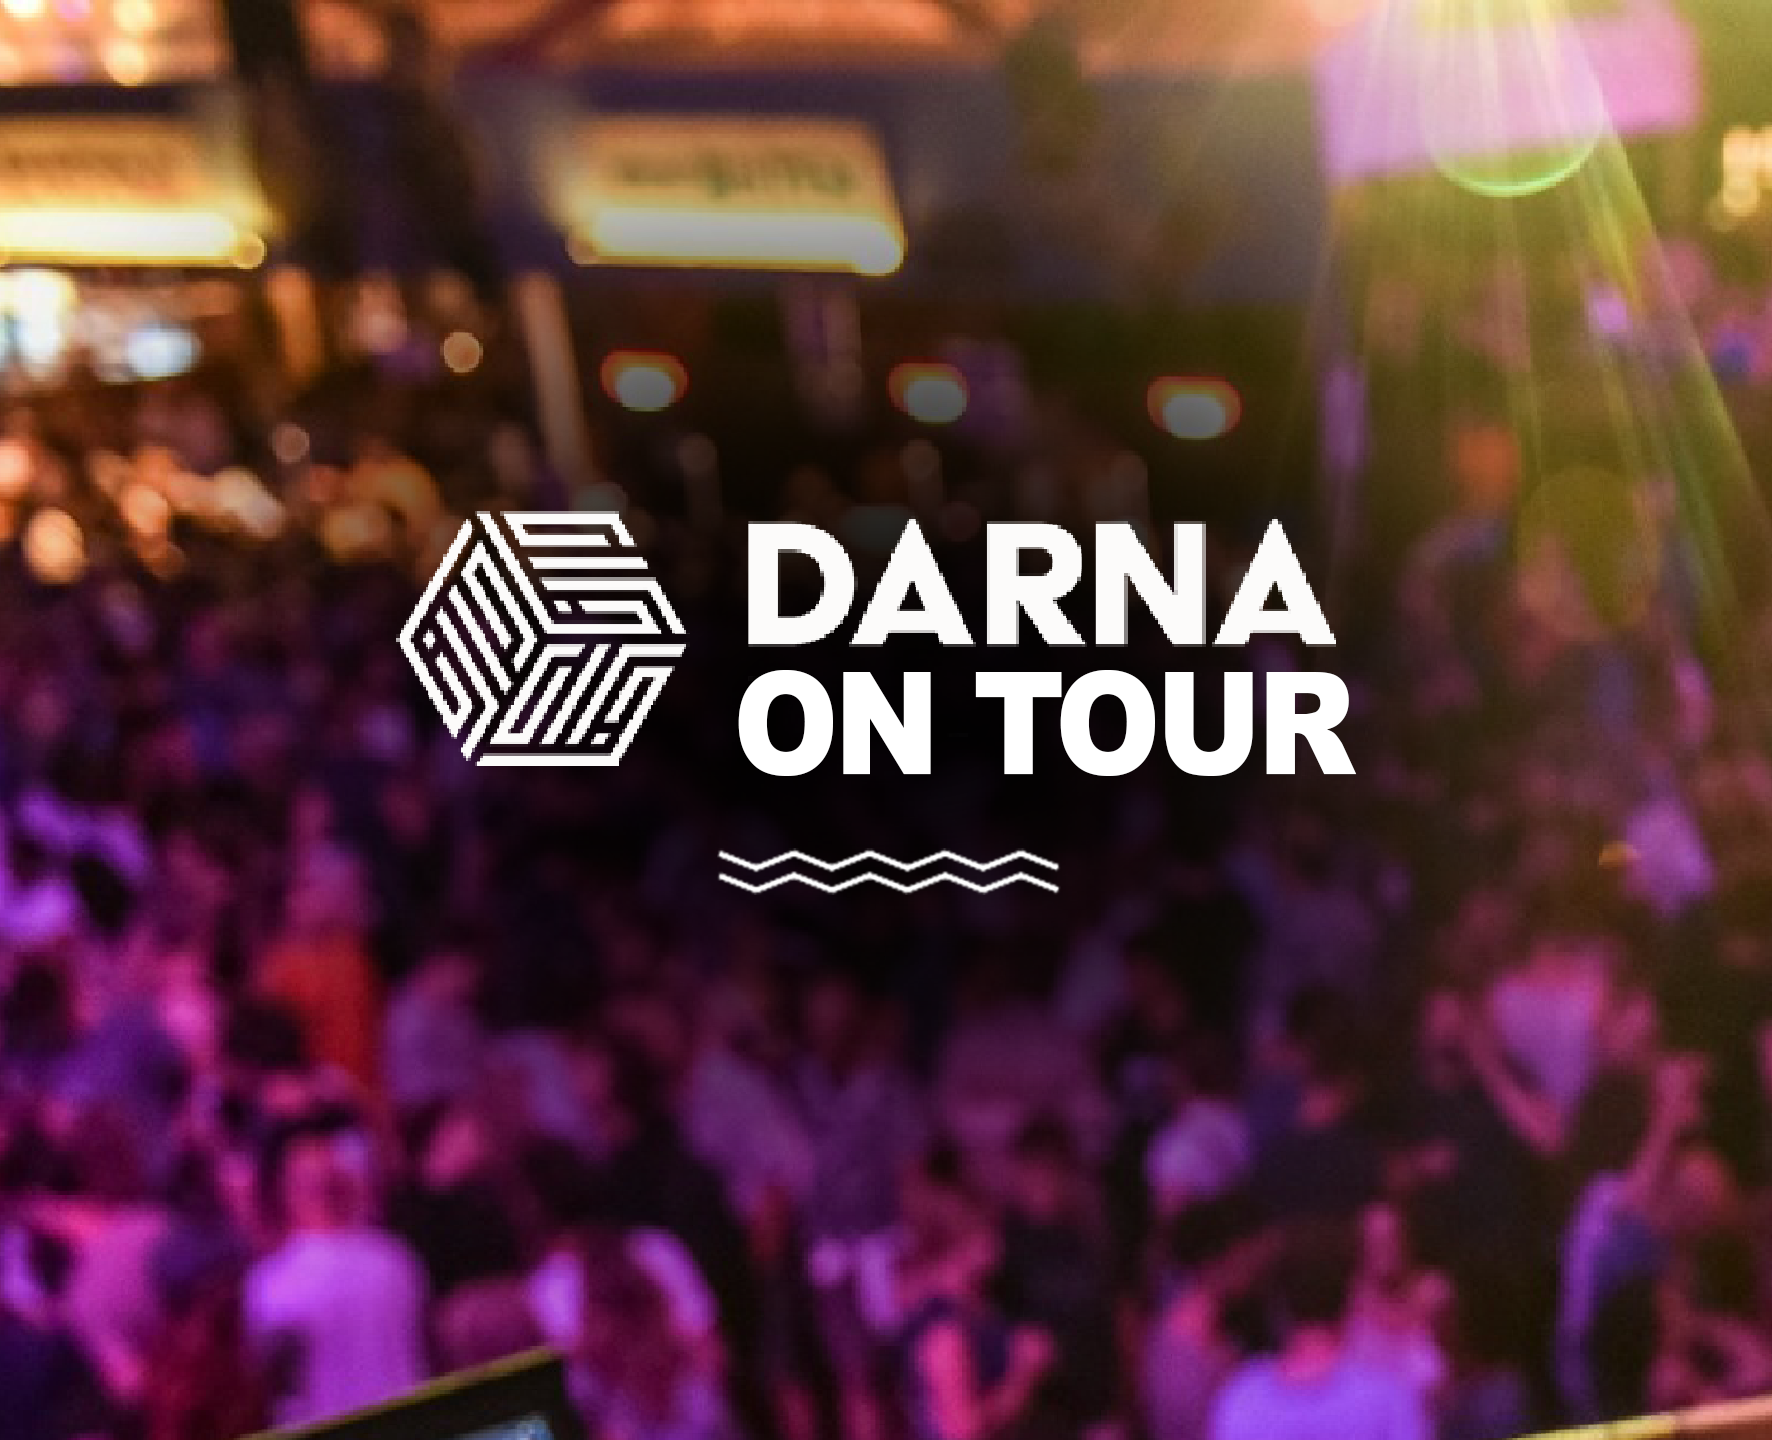 Darna on tour